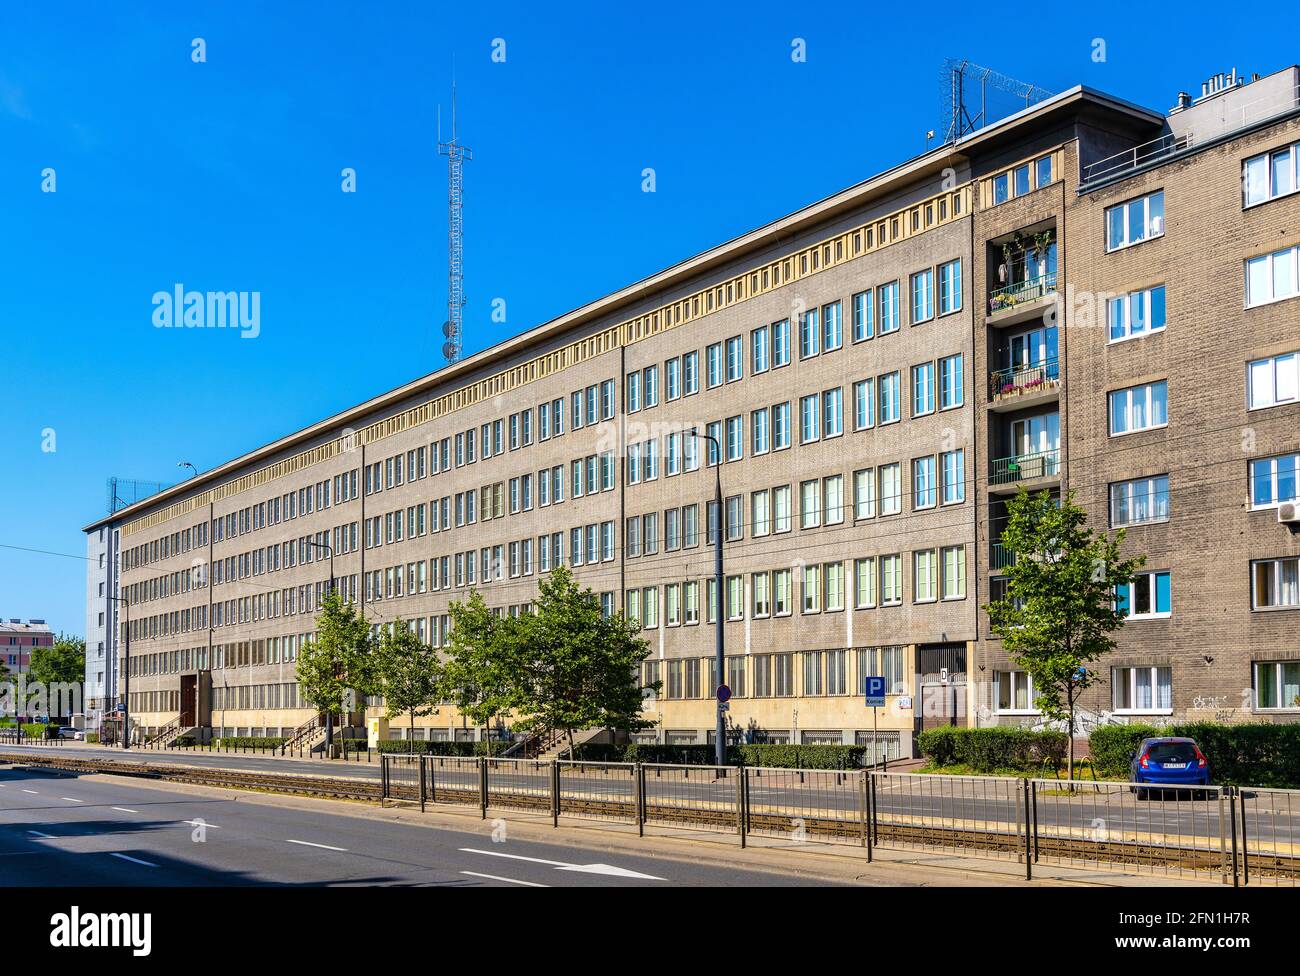 Warschau, Polen - 26. Juli 2020: Militärnachrichtendienst, Sluzba Wywiadu Wojskowego, Gebäude des Hauptquartiers in der Aleja Niepodleglosci Avenue Stockfoto